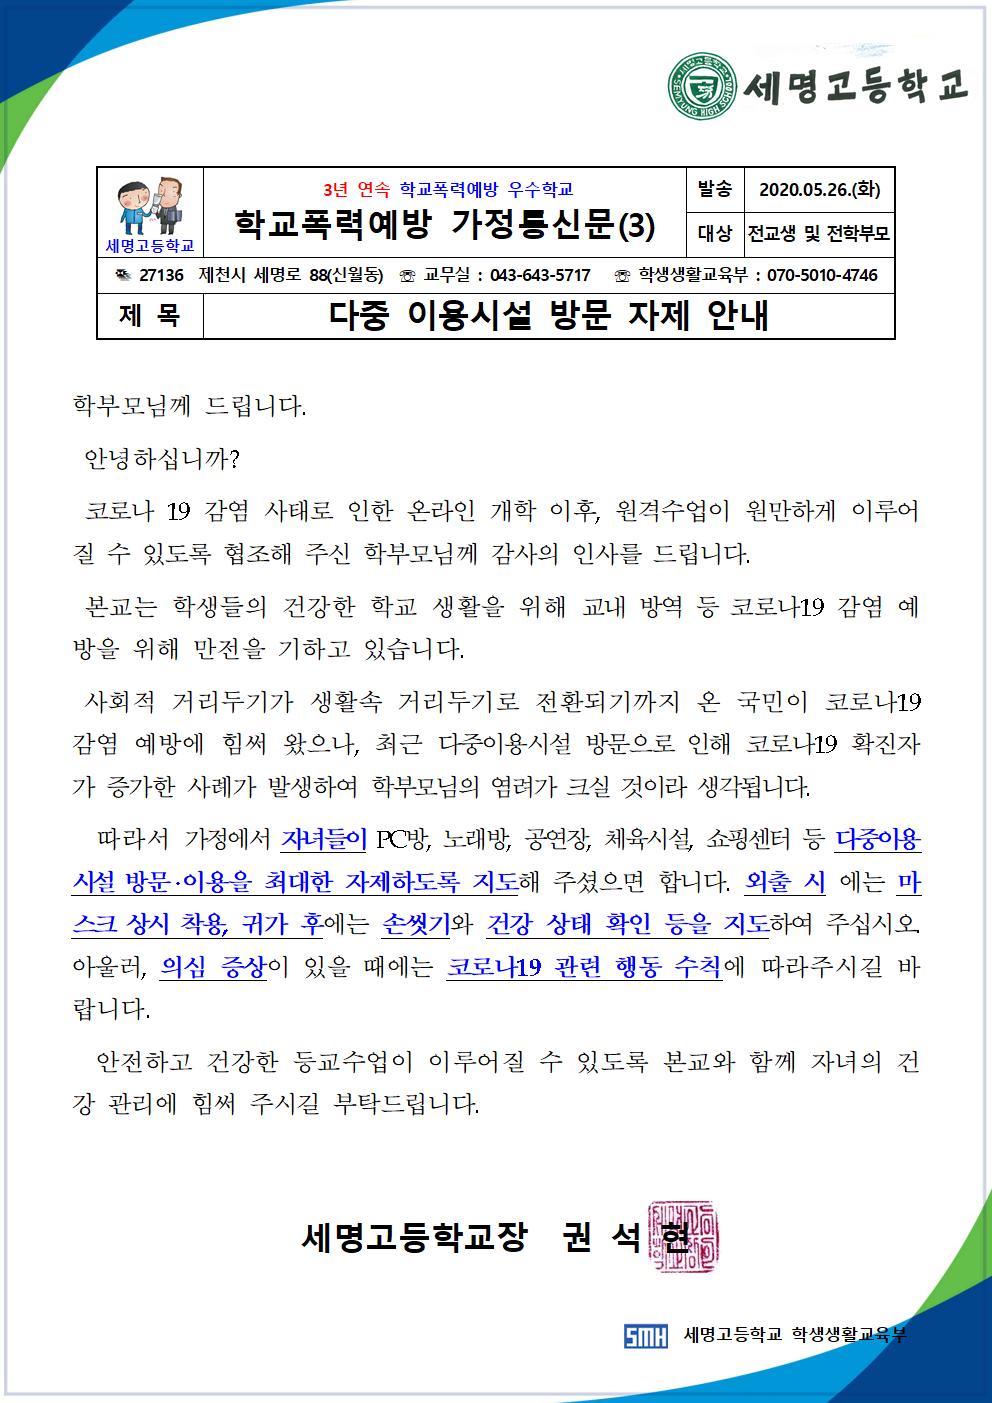 (03) 학교폭력예방 가정통신문(다중 이용시설 방문 자제)(2020.05.26.)